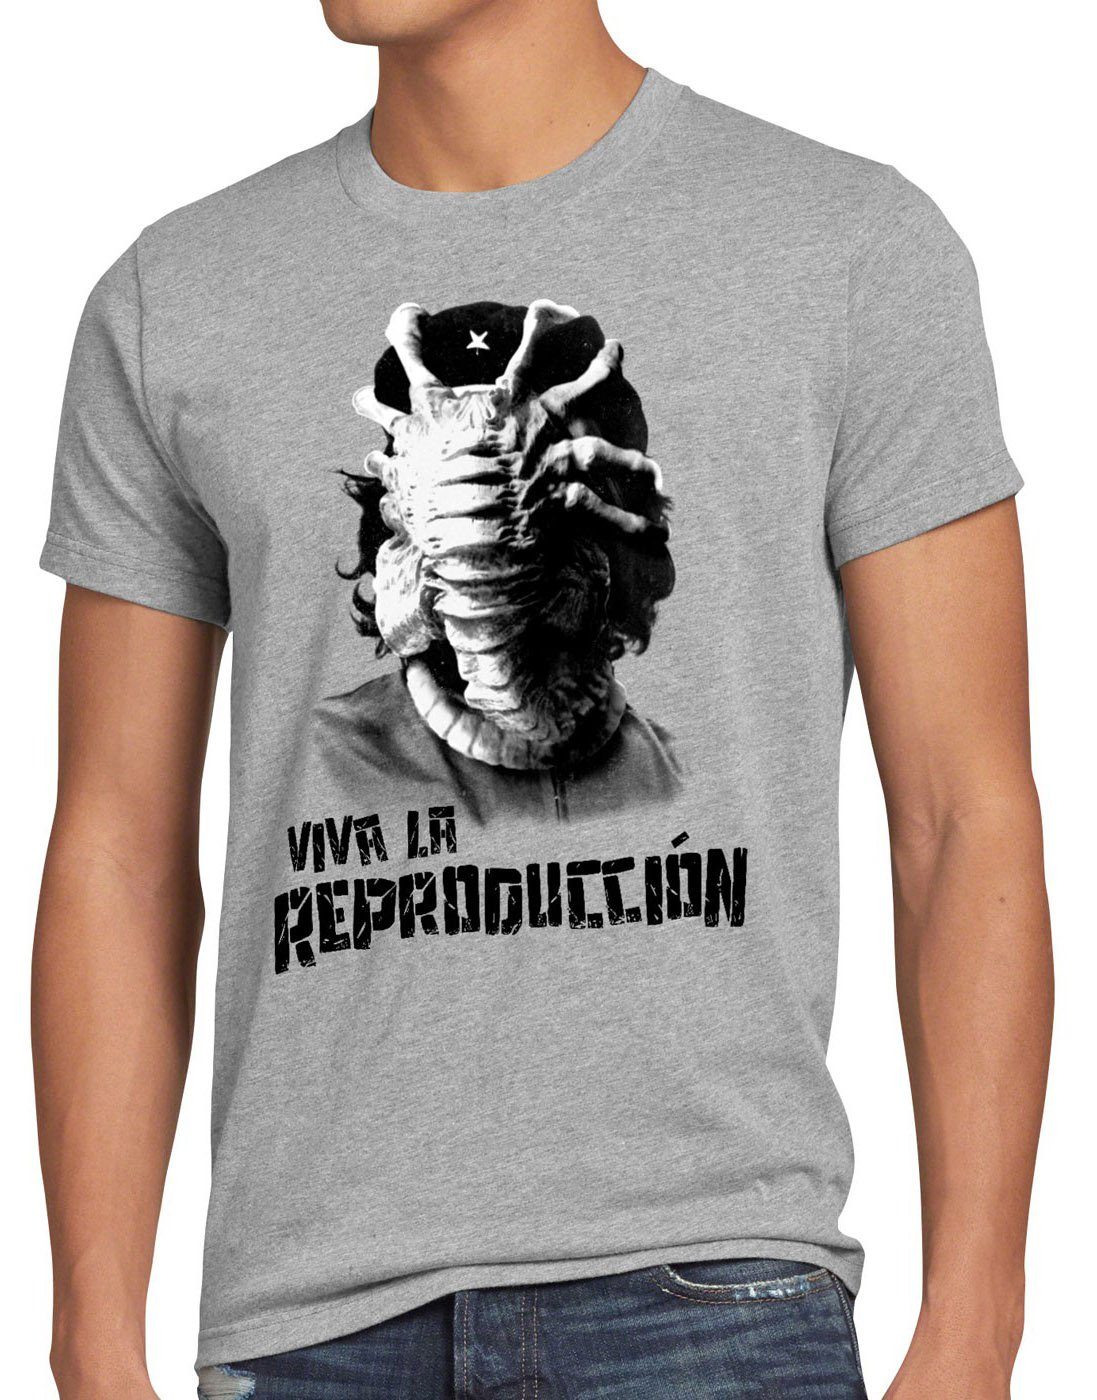 style3 Print-Shirt Herren T-Shirt Viva Facehugger alien che guevara revolution kuba xenomorph kino grau meliert